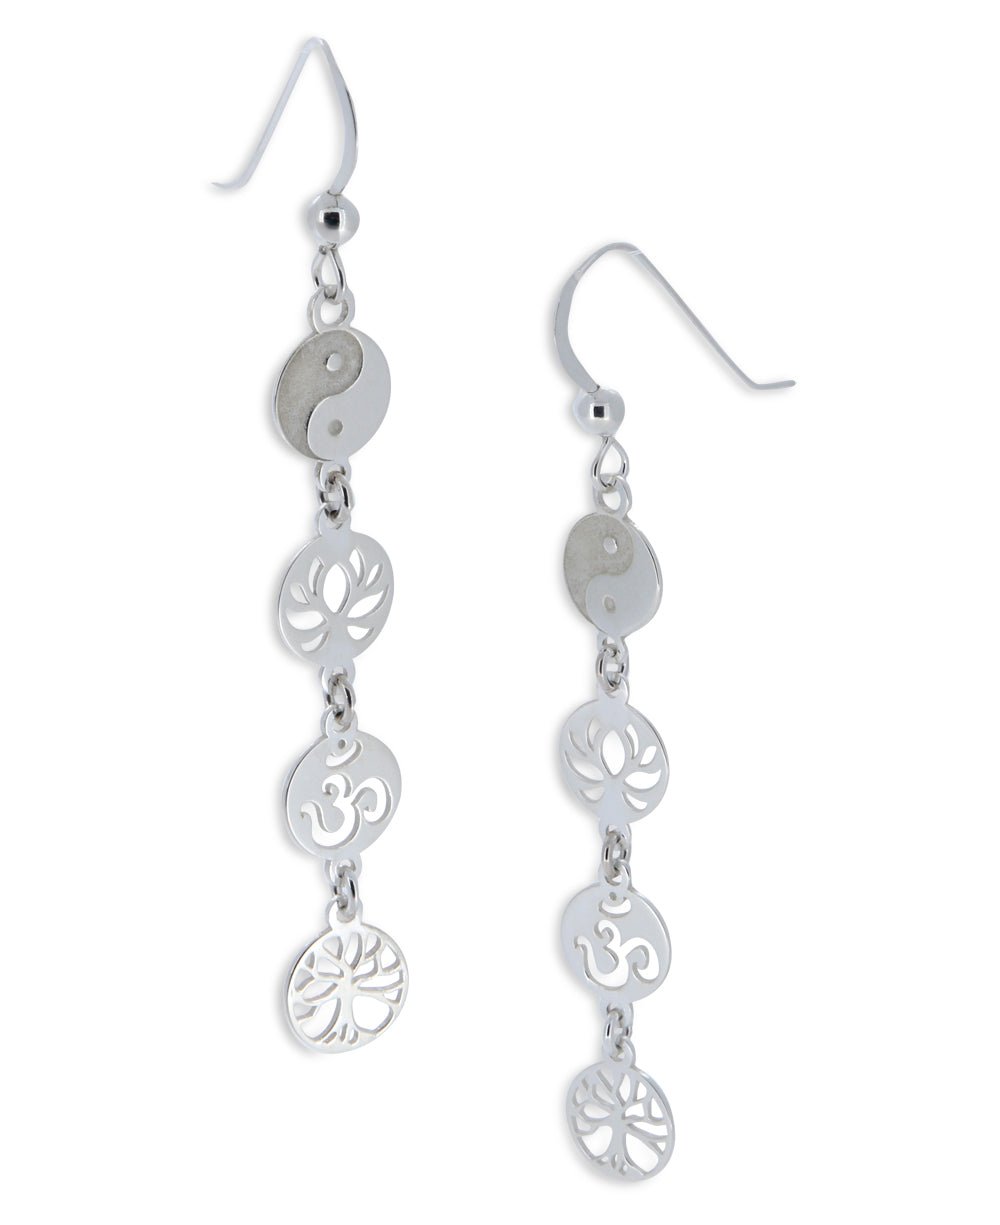 Meaningful Symbols Link Earrings, Sterling Silver - Earrings